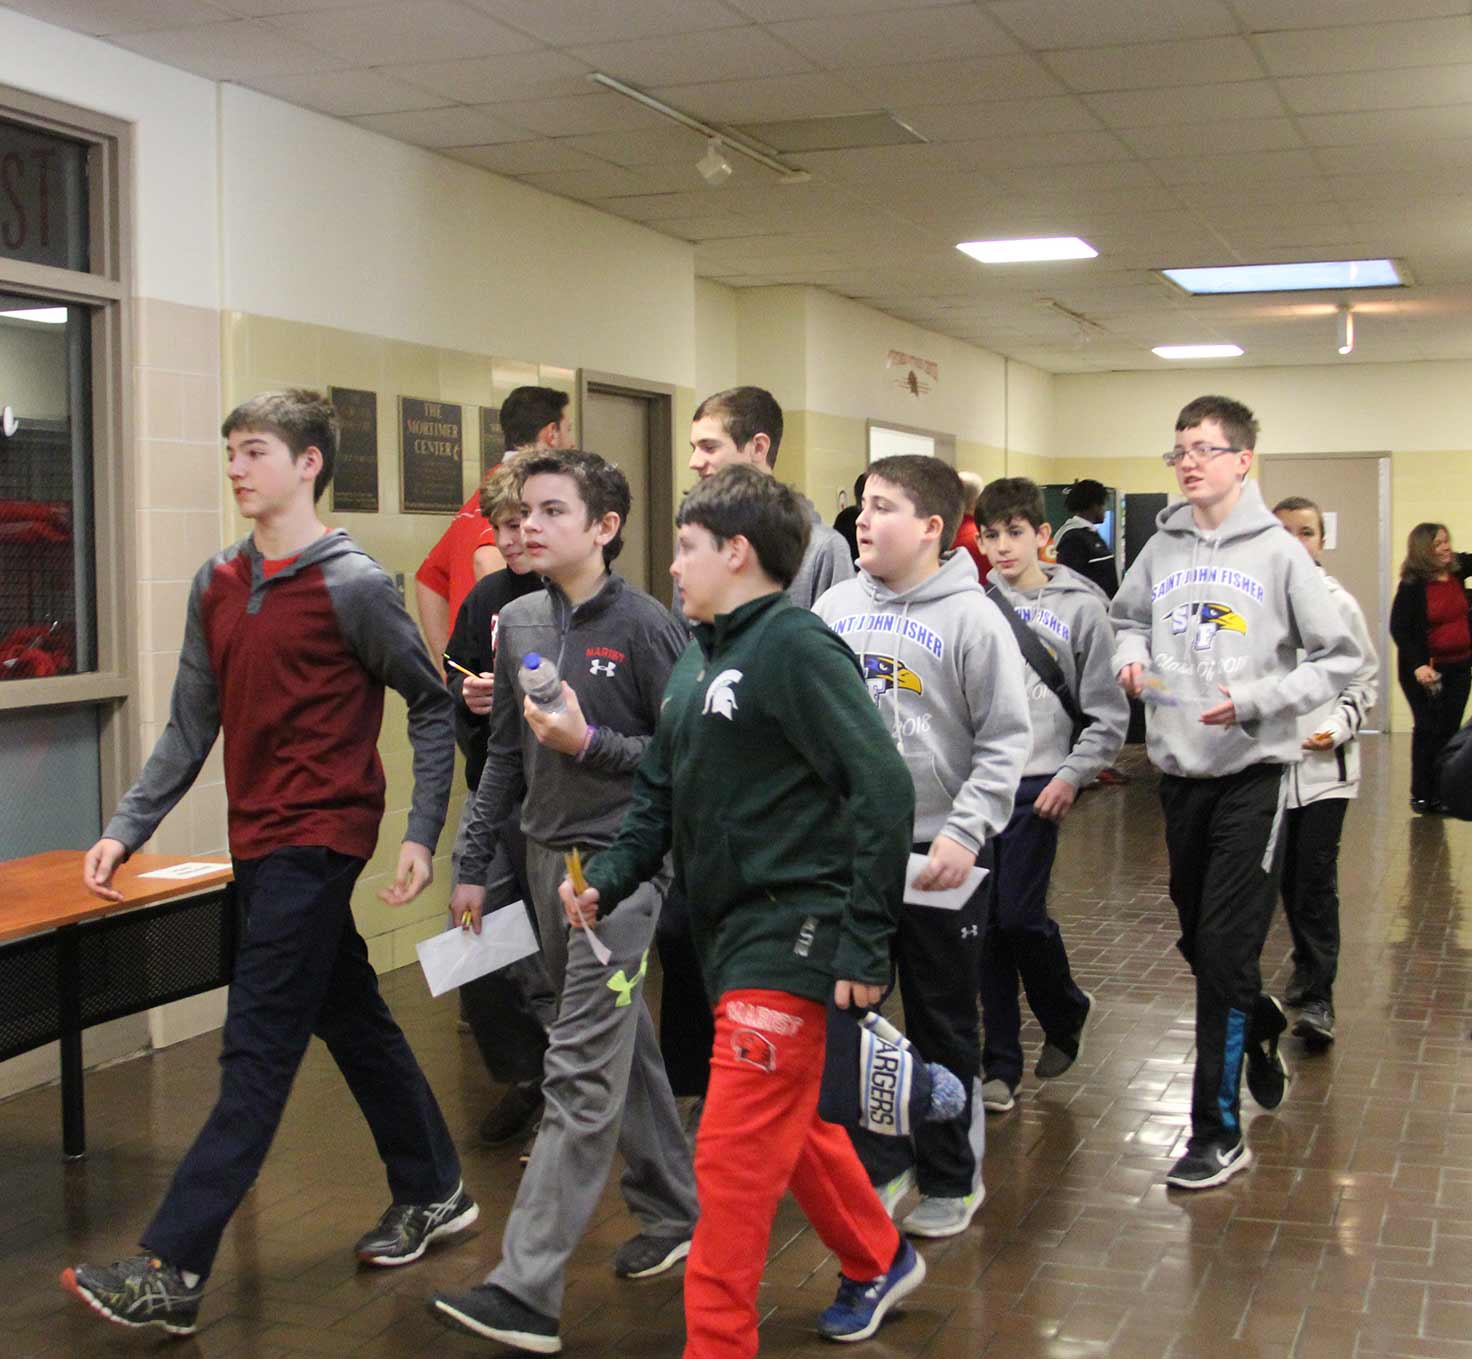 header-image-bell-schedule-students-walk-through-halls